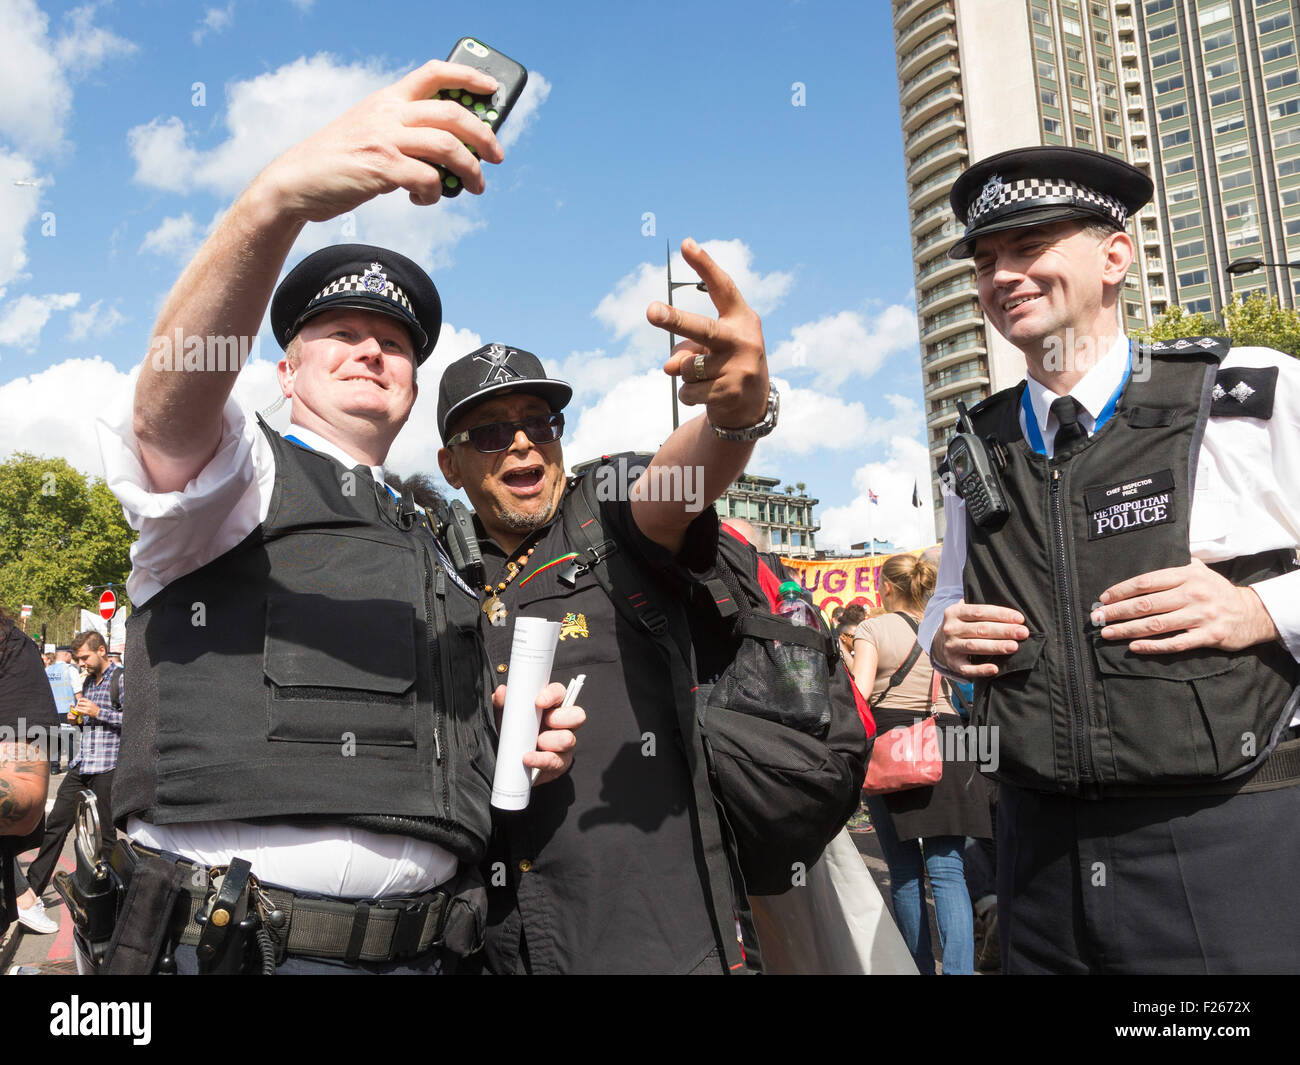 Londres, Royaume-Uni. Sept 12, 2015. Le militant politique Lee Jasper a une prise selfies avec un agent de police. Des dizaines de milliers de personnes prennent part à la solidarité avec les réfugiés de démonstration dans le centre de Londres, David Cameron sur l'appelant à prendre des mesures efficaces pour tourner autour de la crise des réfugiés et accepter la juste part des réfugiés déjà en Europe. D'images éclatantes/Alamy Live News Banque D'Images